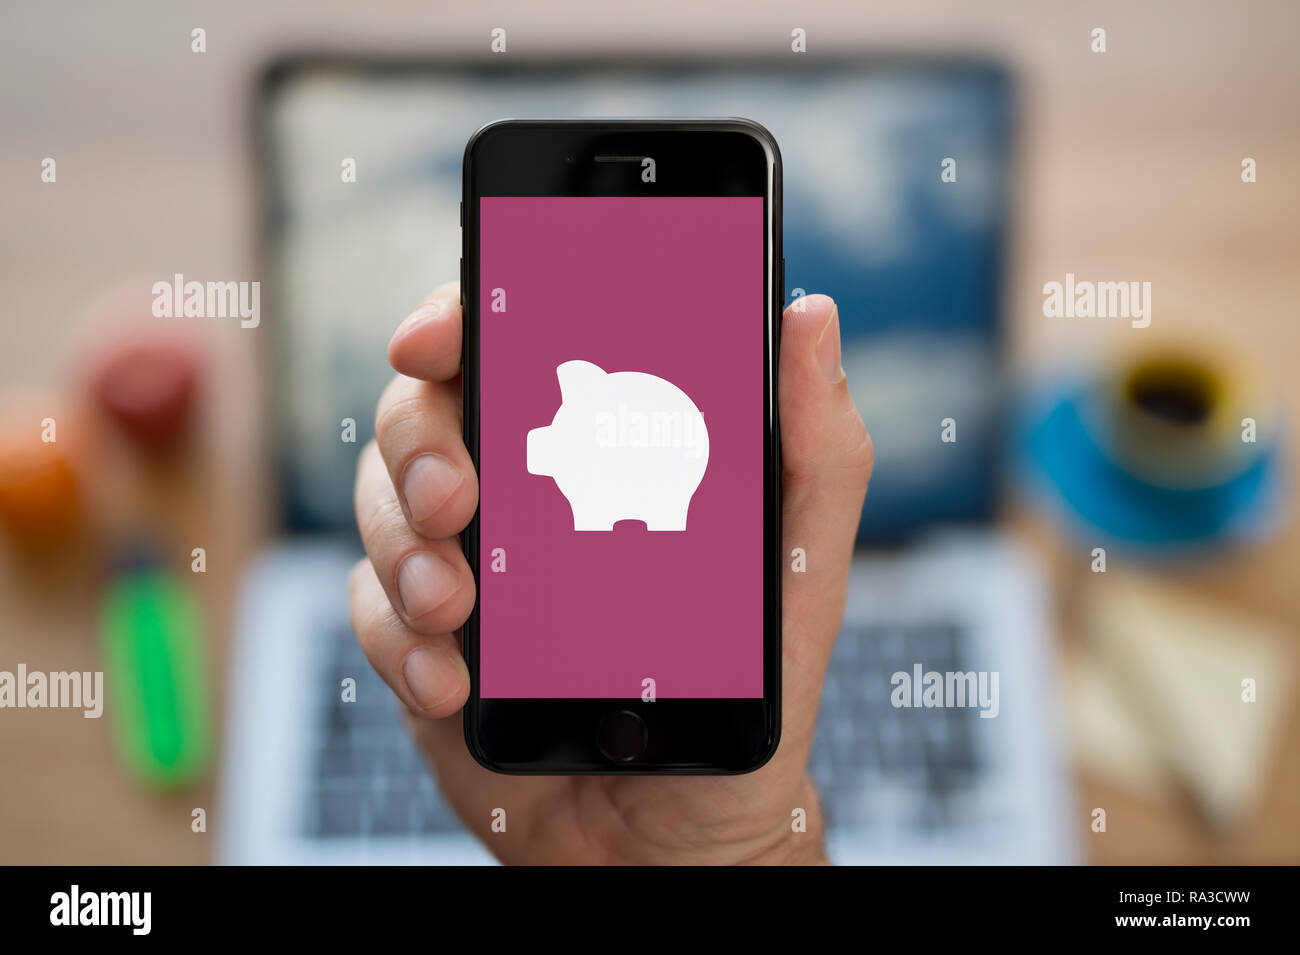 Un uomo guarda al suo iPhone che visualizza il logo Piggybank (solo uso editoriale). Foto Stock